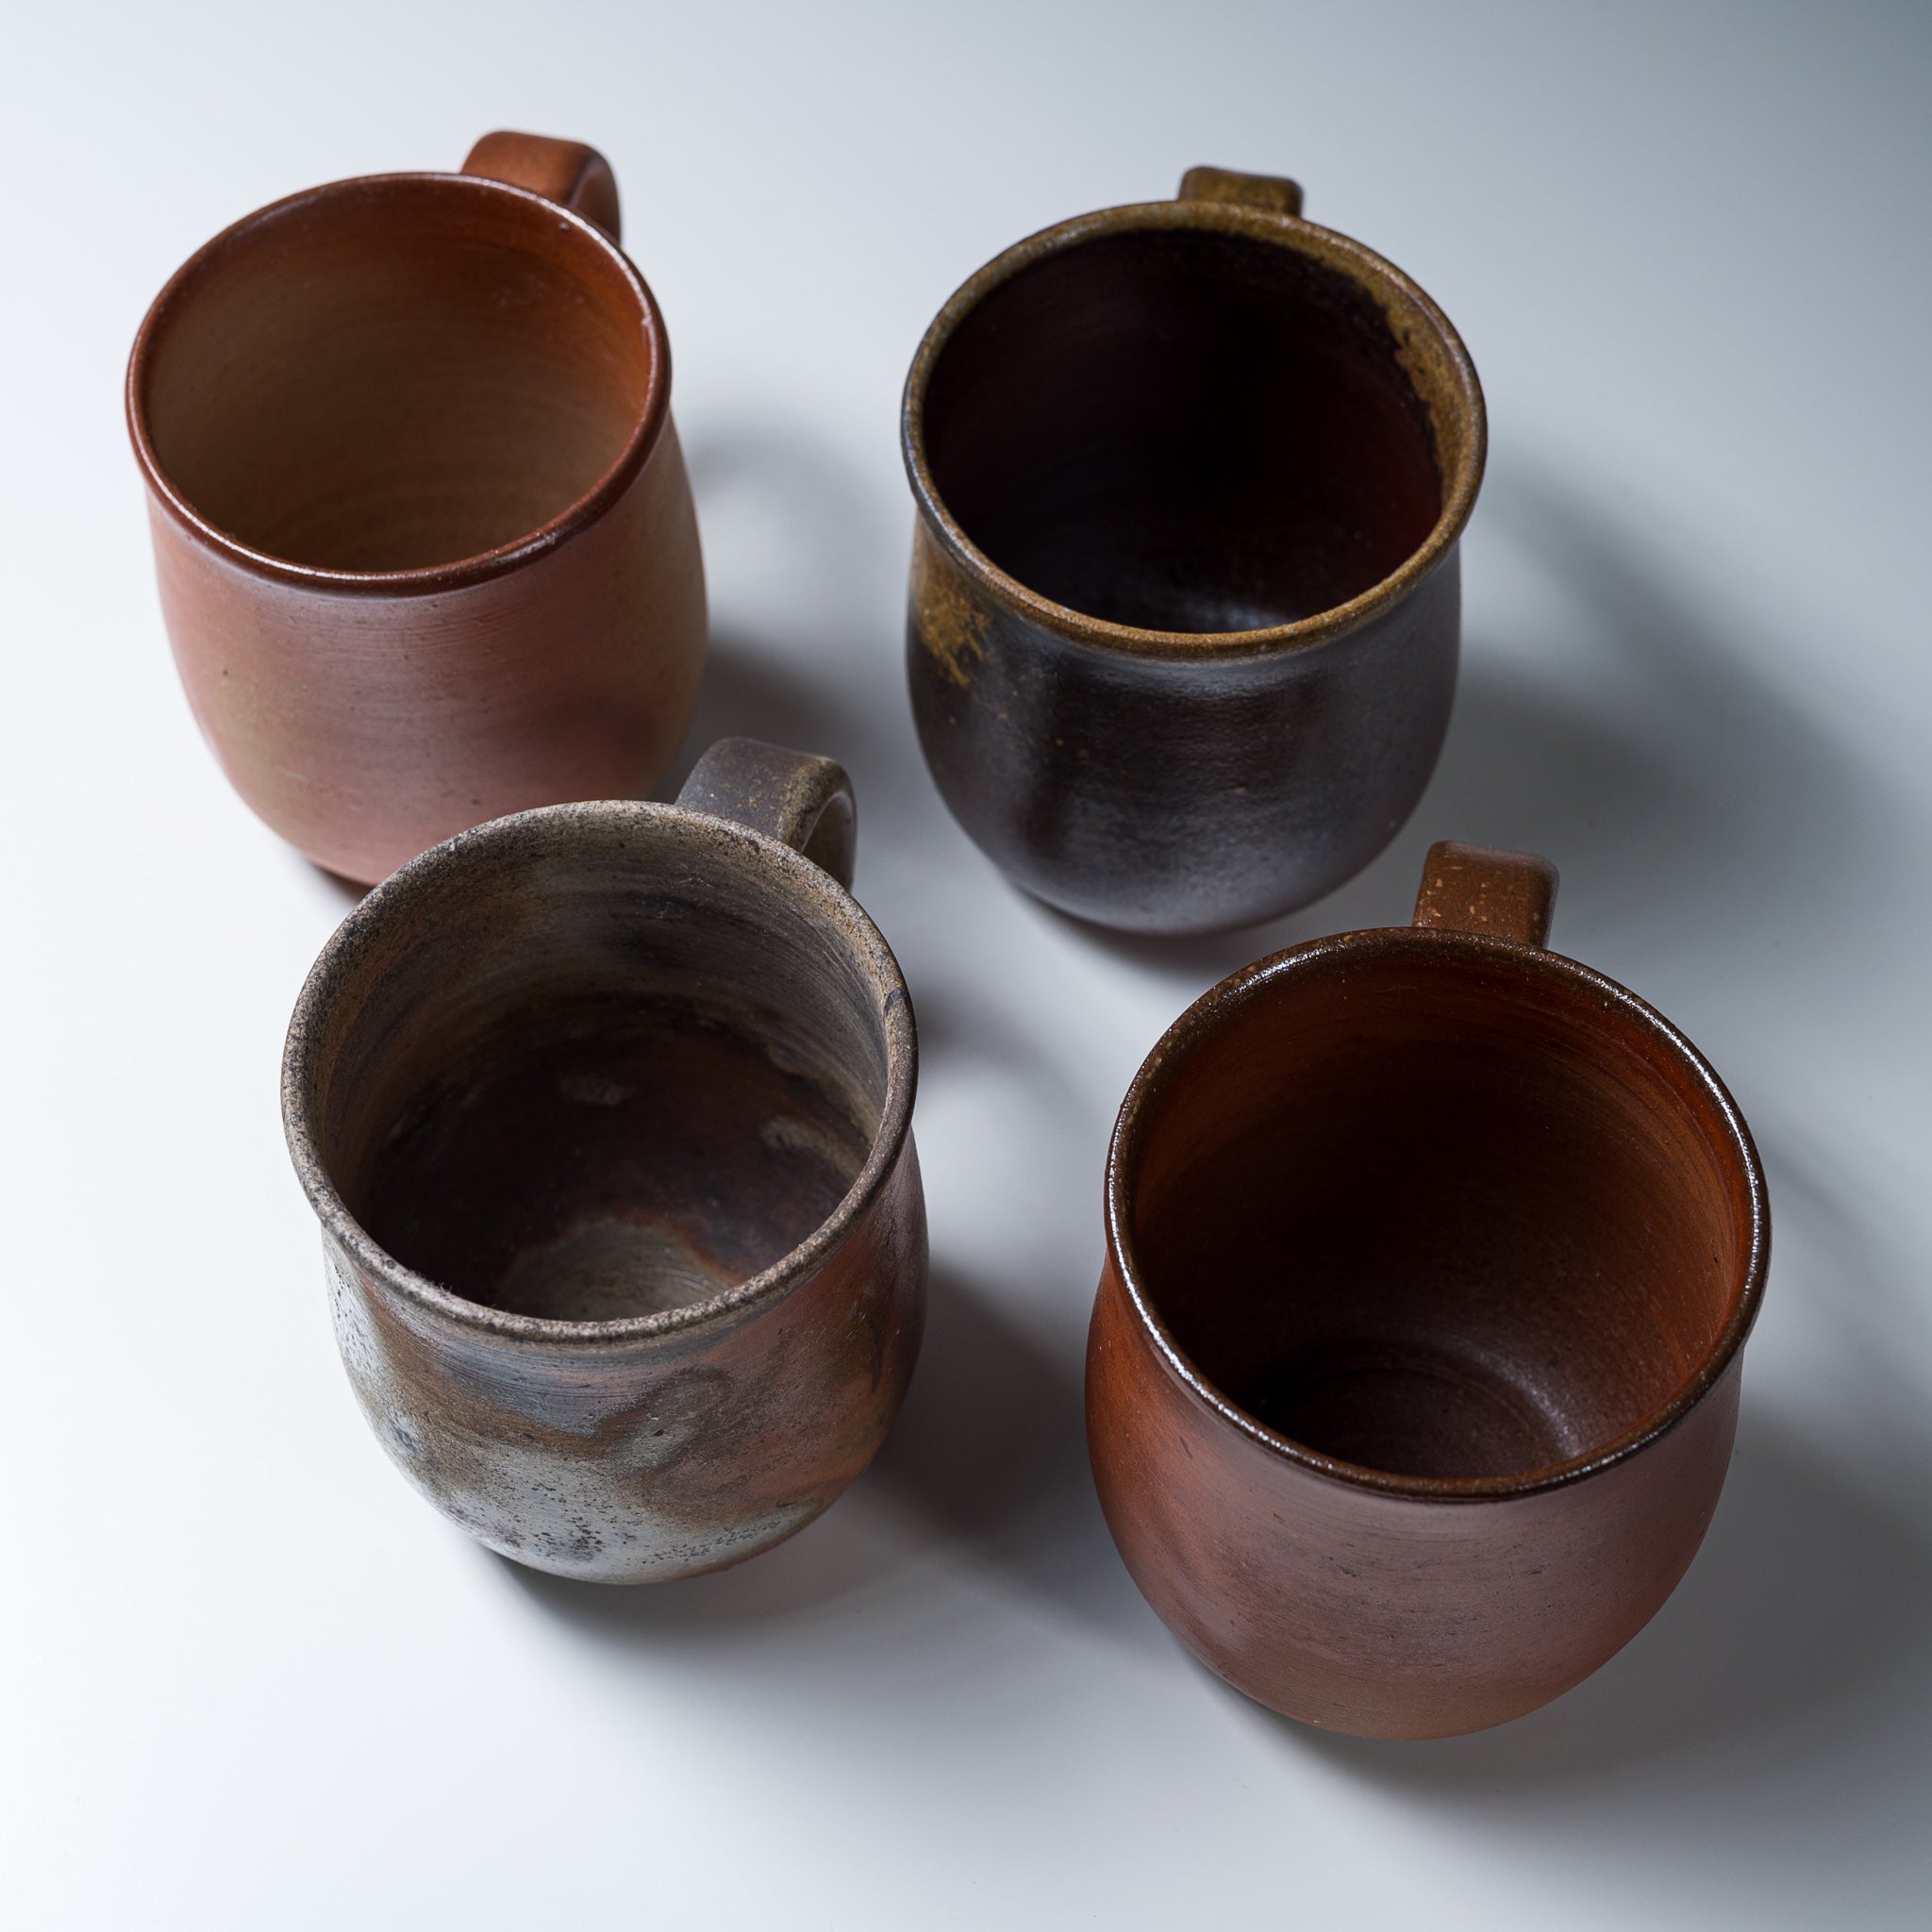 Bizen Pottery Regular Mug Cup - Hidasuki / 備前焼 マグカップ